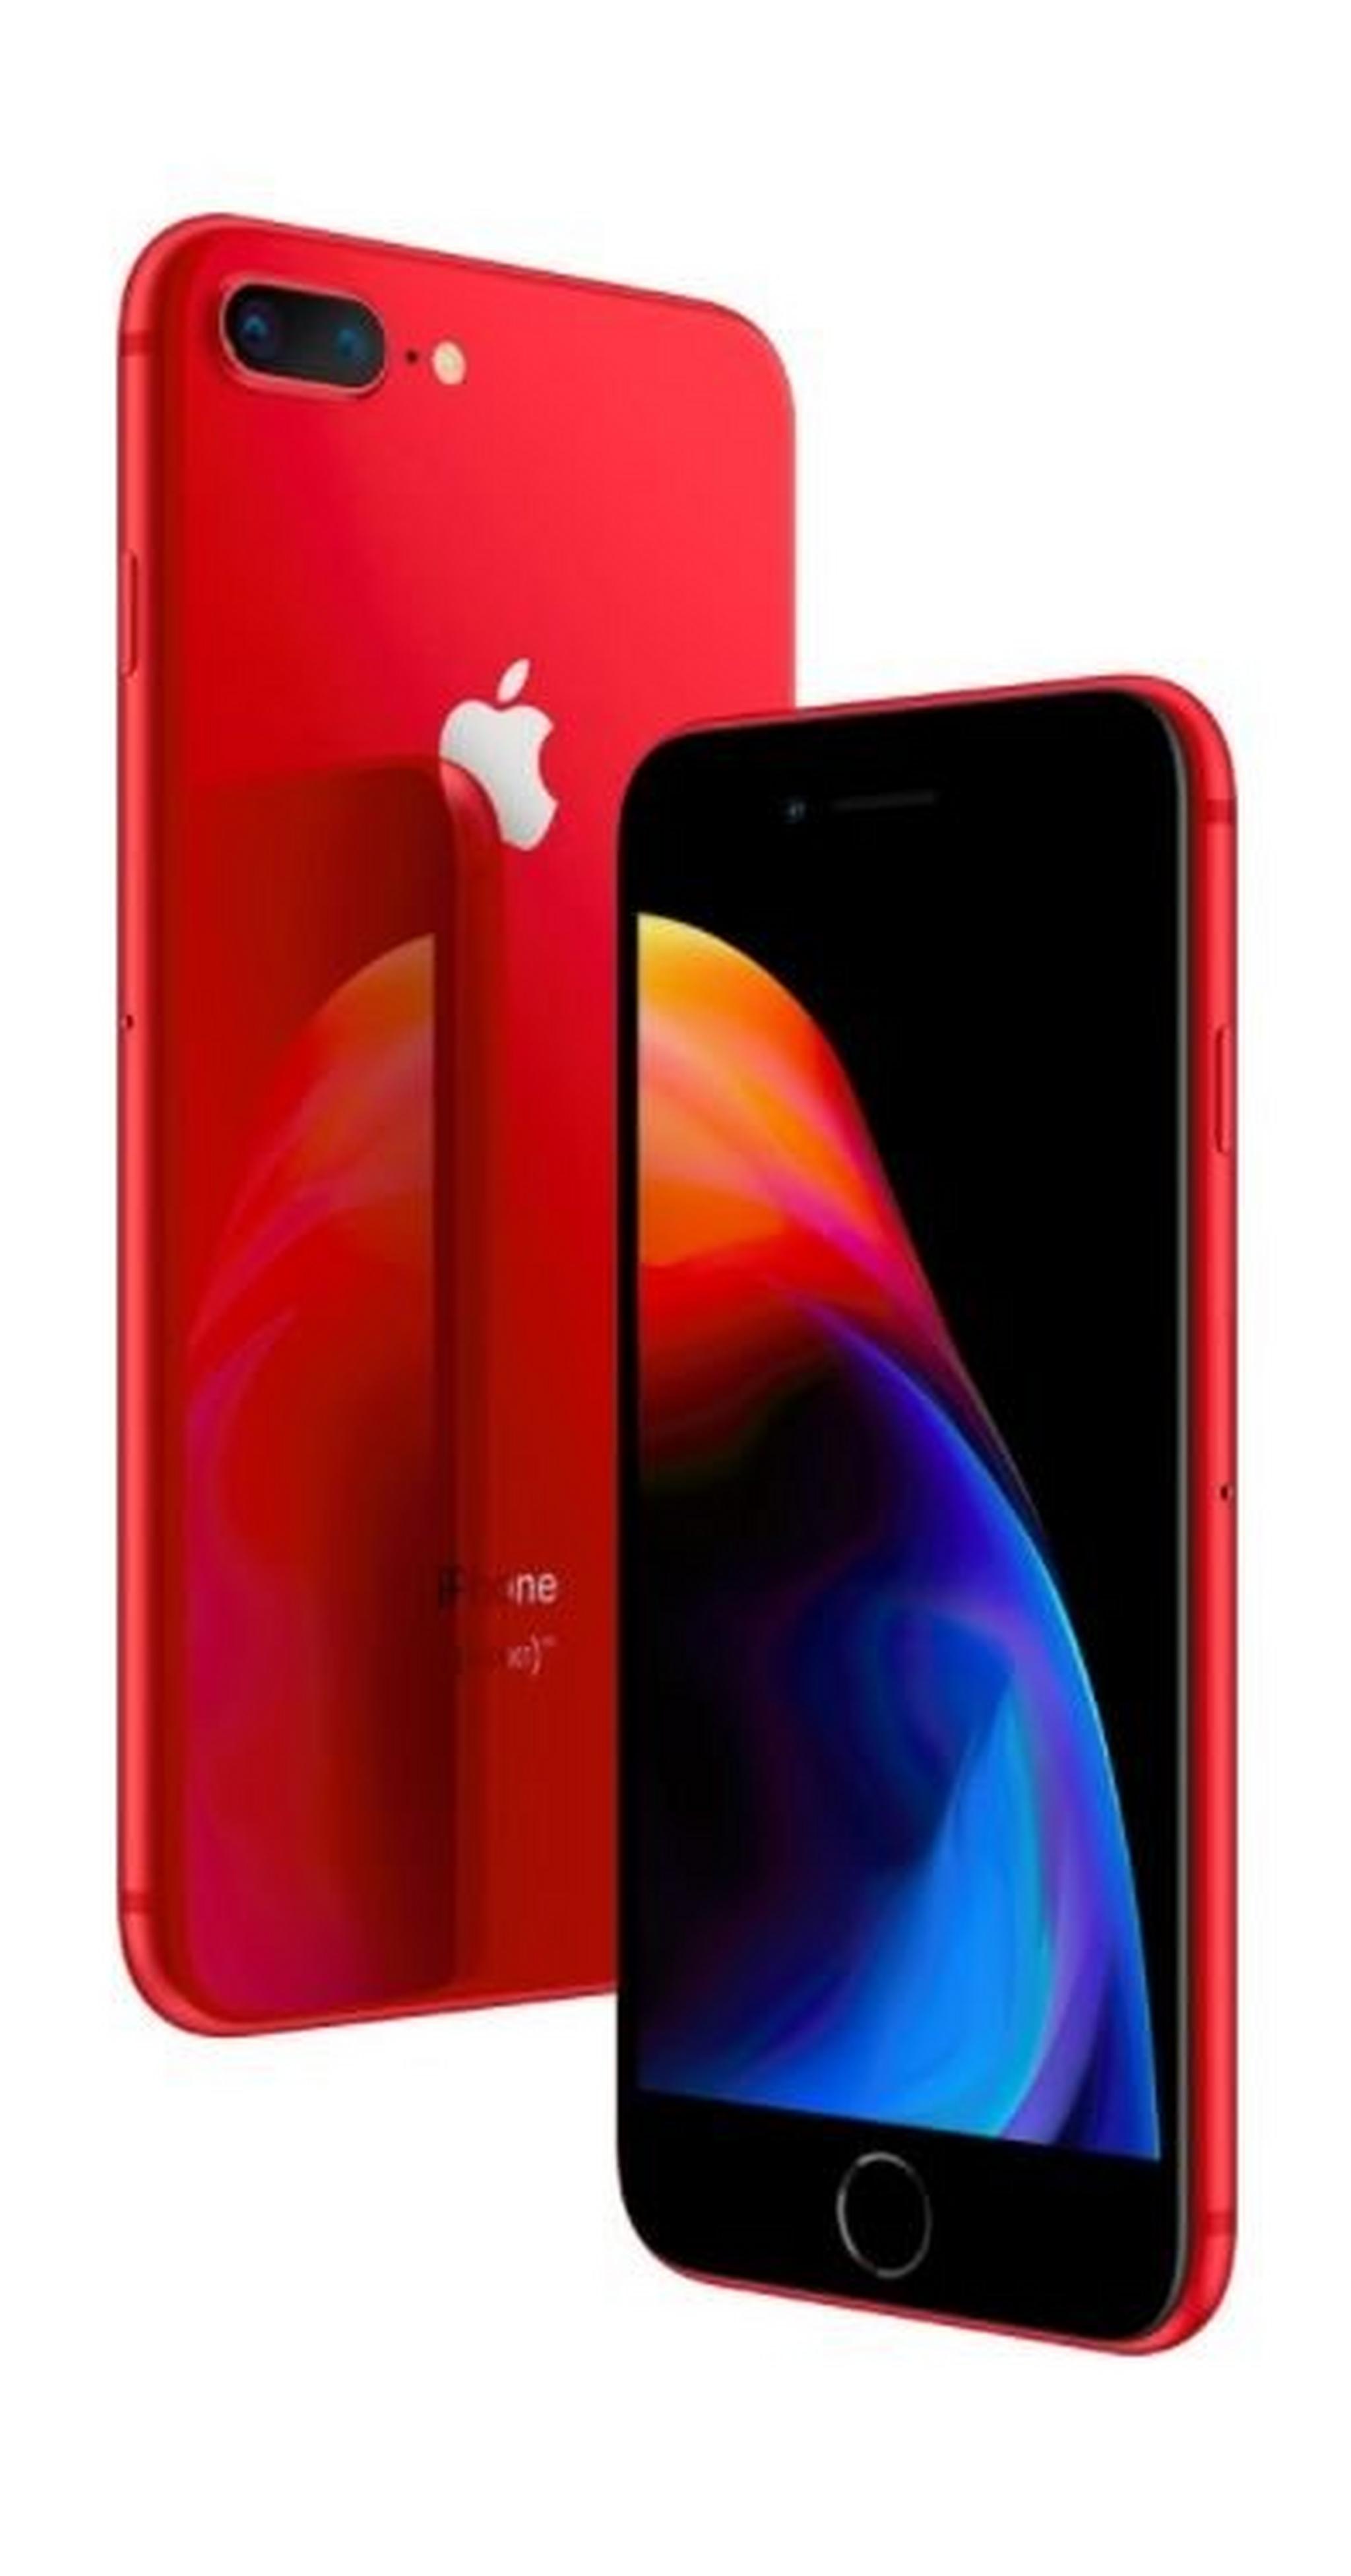 Apple iPhone 8 Plus 64GB Phone - Red